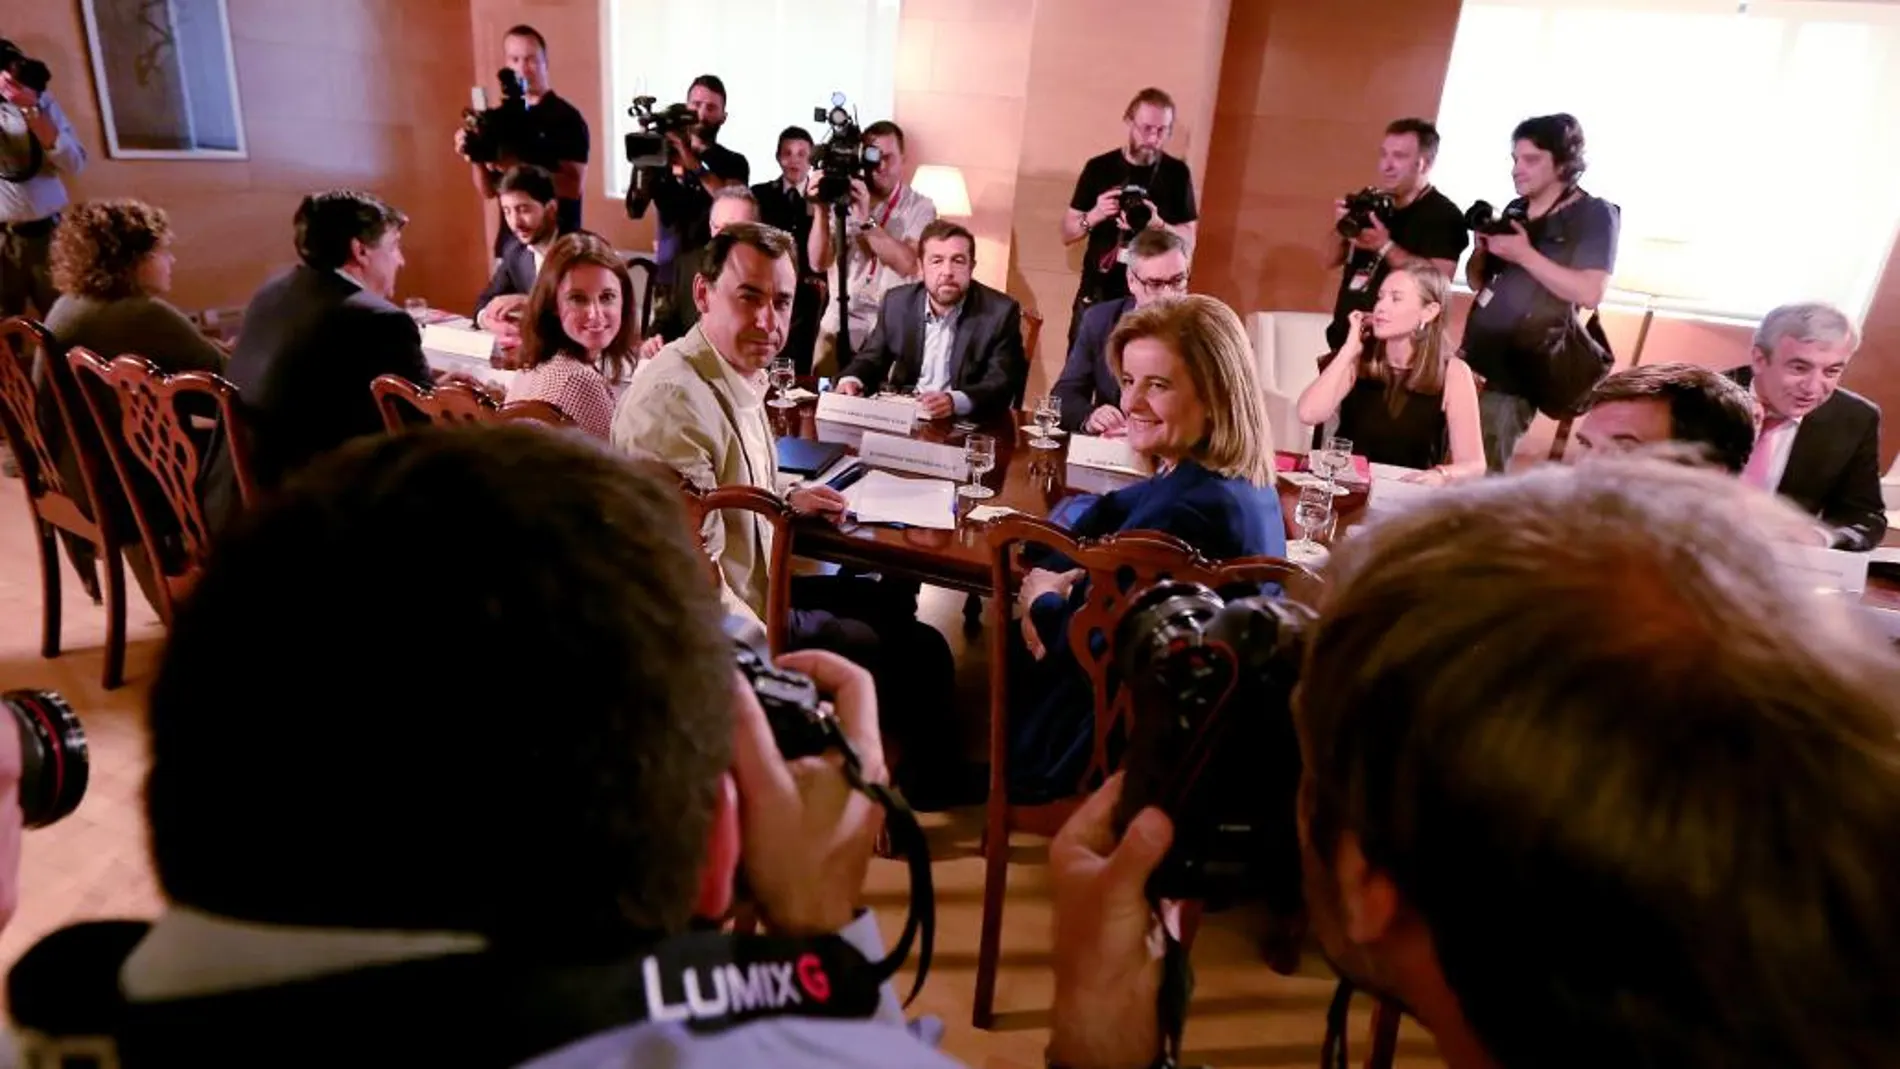 Reunión del comité negociador de PP y Ciudadanos de cara a la investidura de Rajoy.